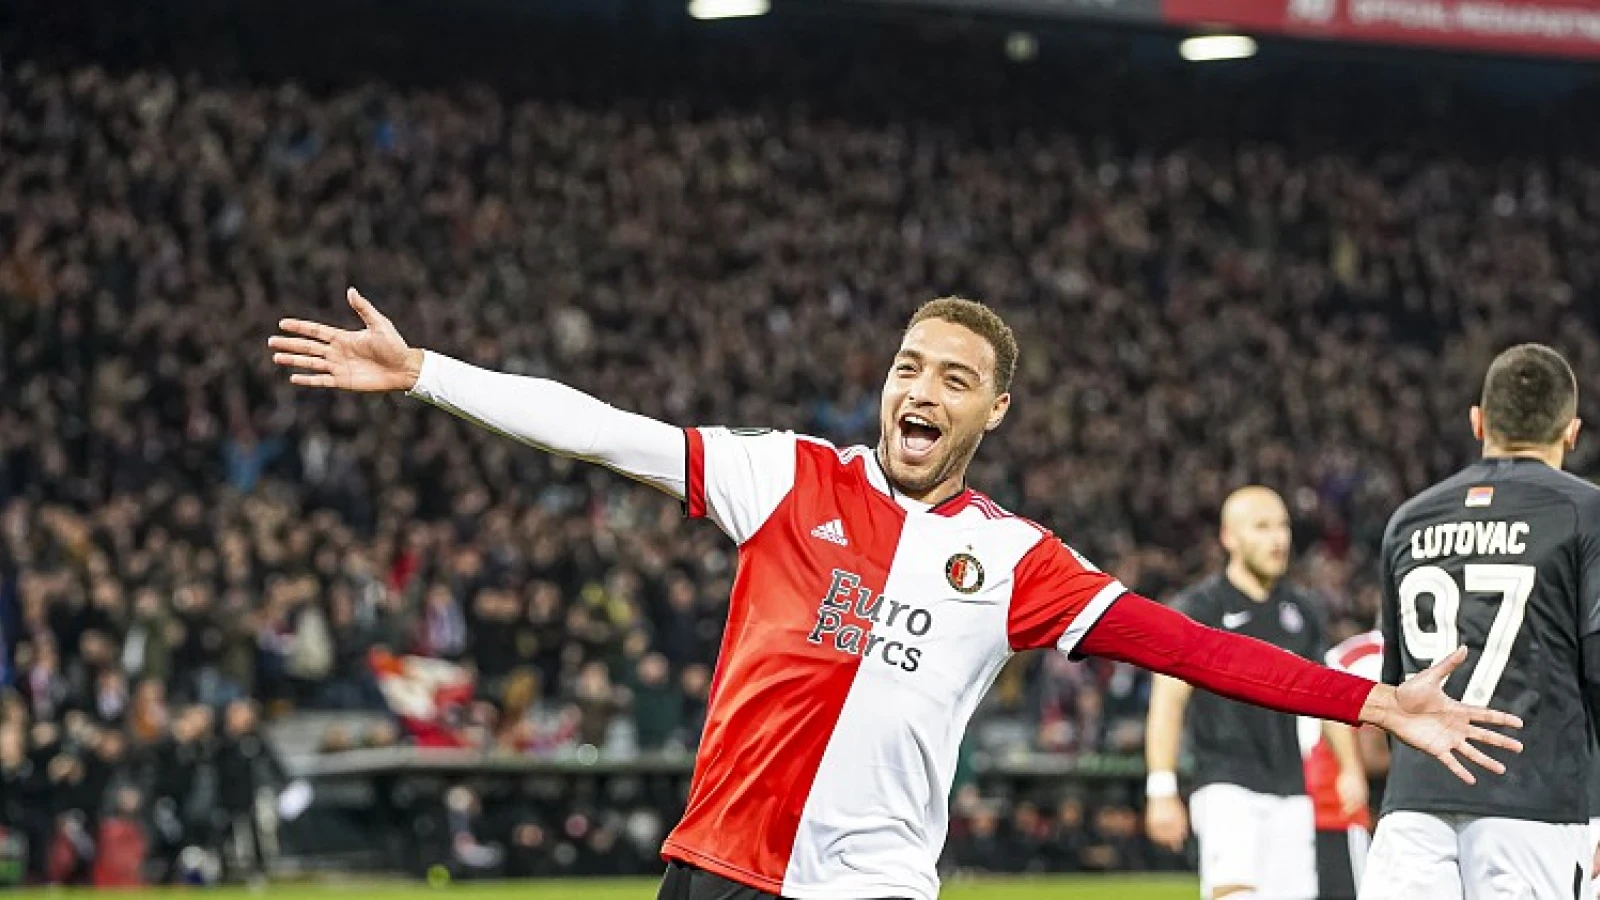 De kranten: 'Feyenoord als kwartfinalist naar Ajax'